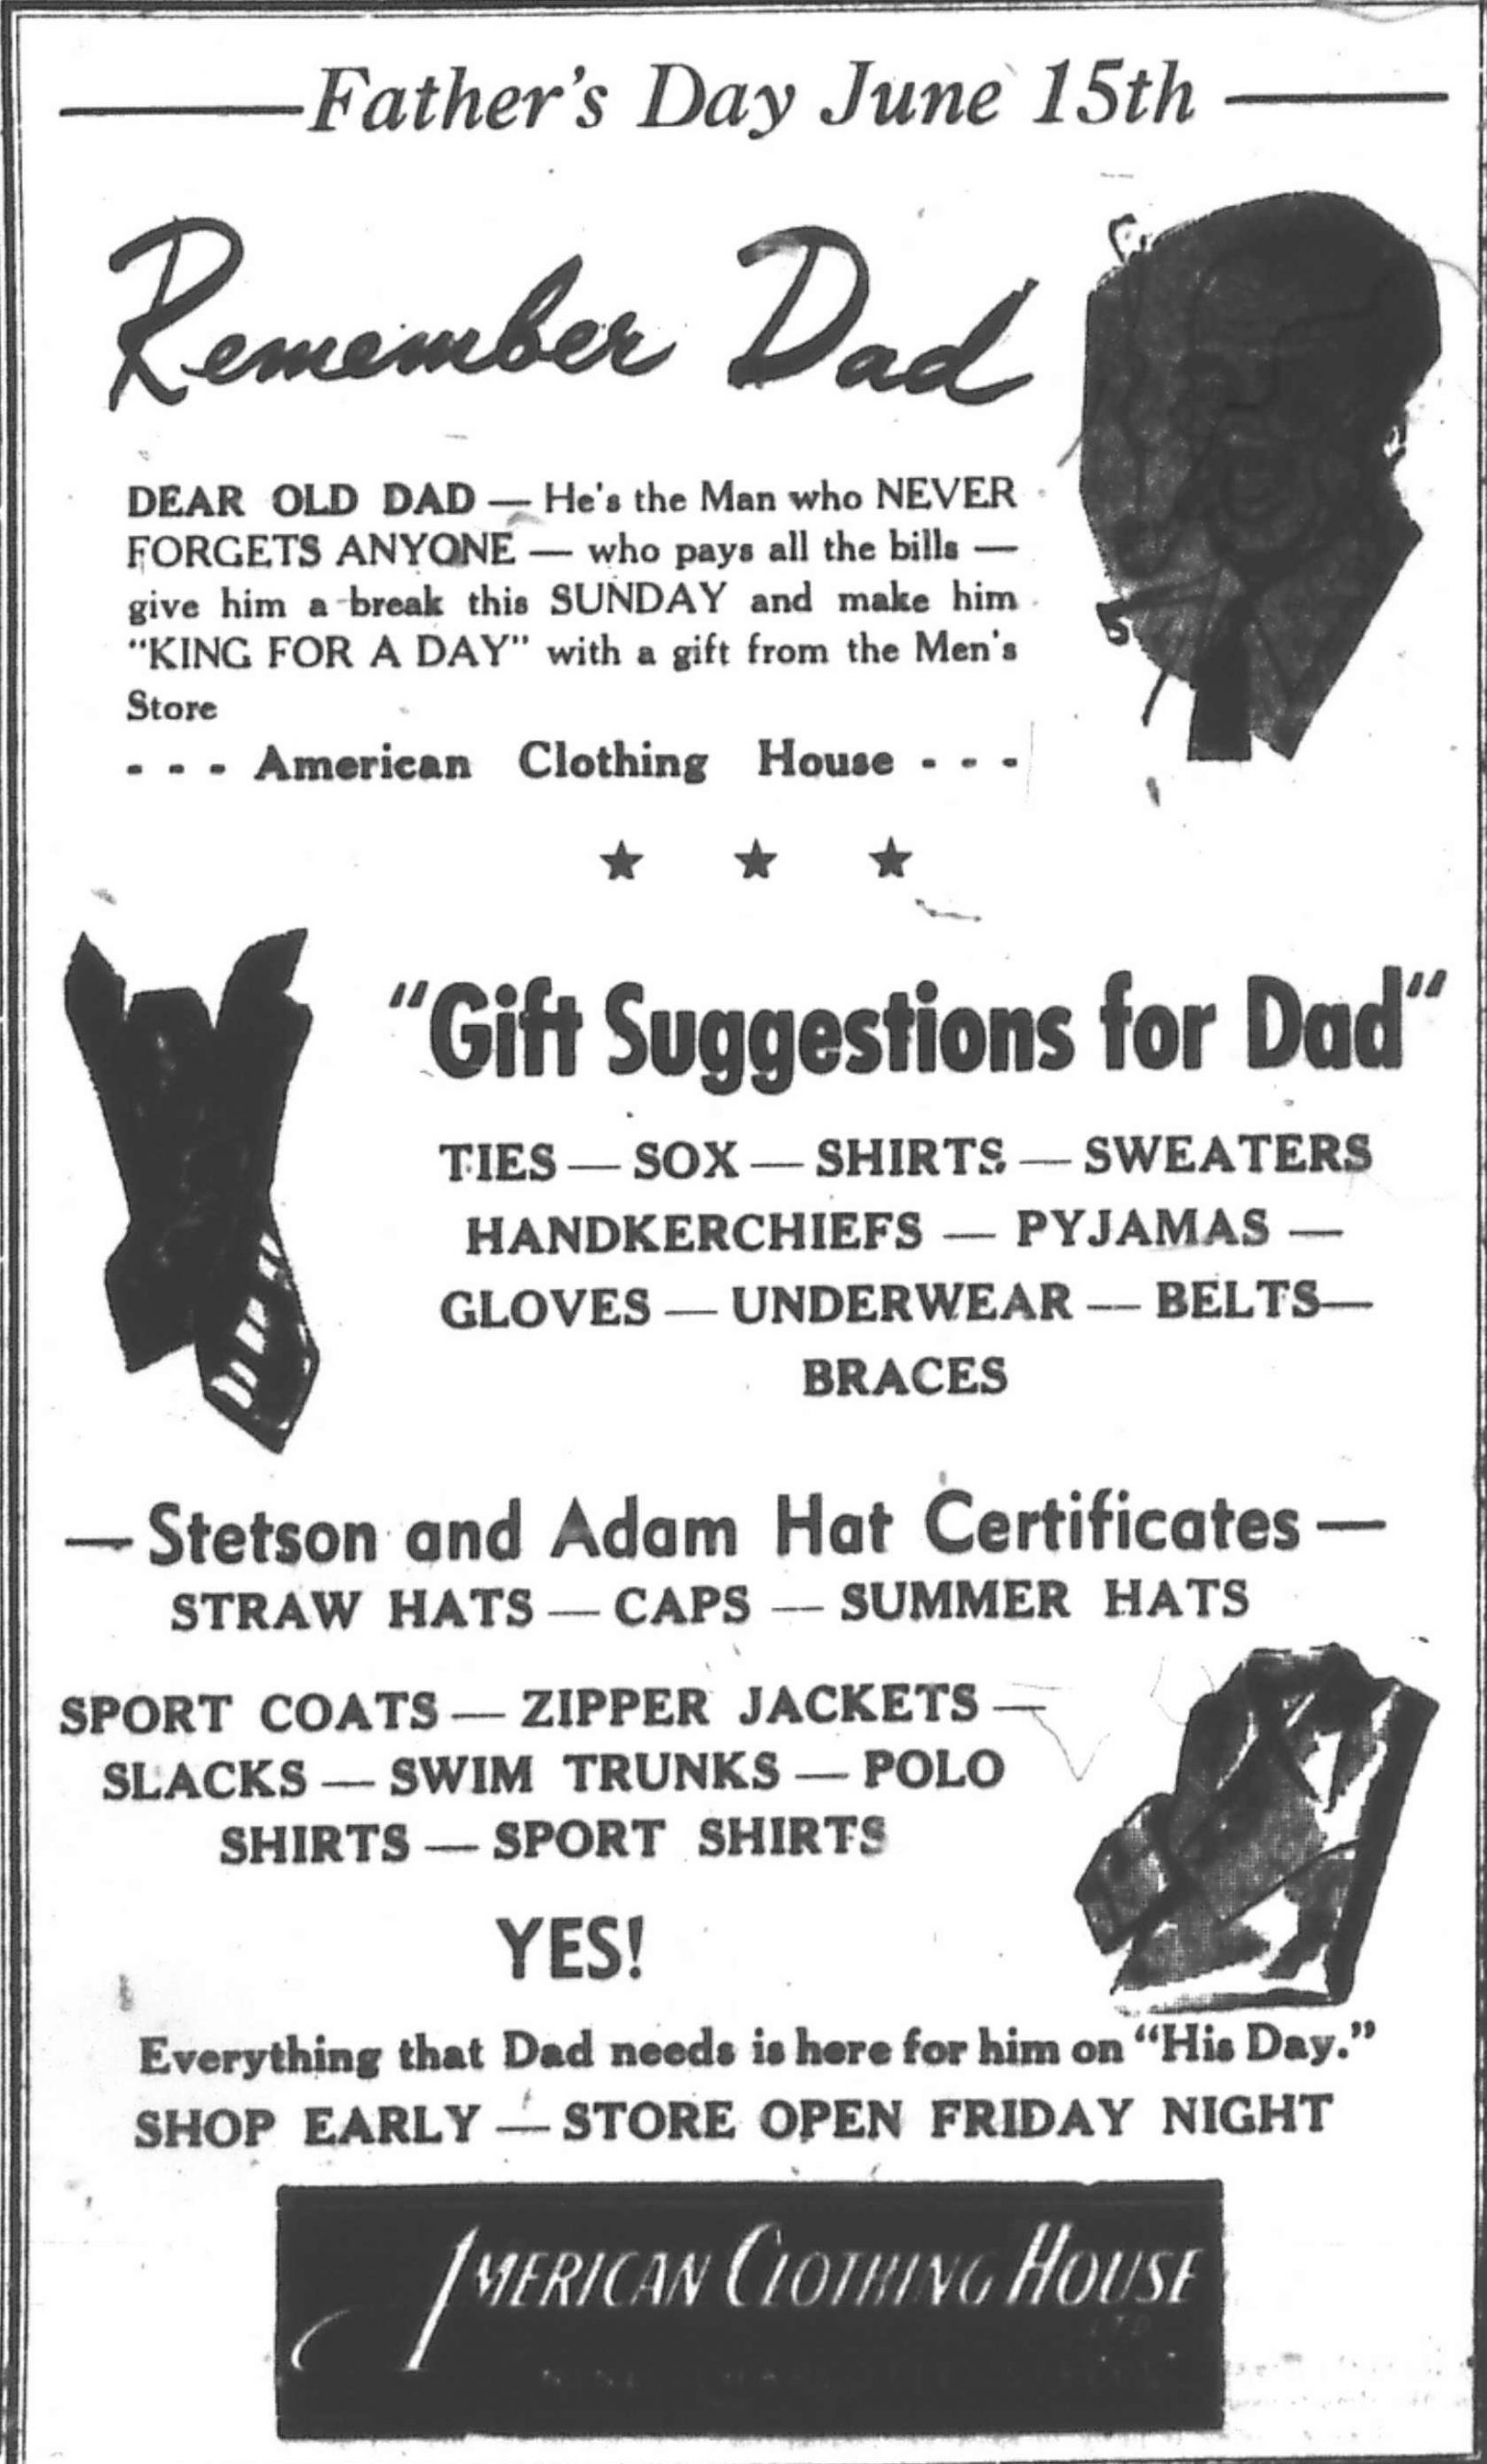 Publicité de presse intitulée « Father’s Day June 15th – Remember Dad – American Clothing House » présentant des suggestions de cadeaux, comprenant des cravates, des mouchoirs, des chapeaux et des chemises de sport.